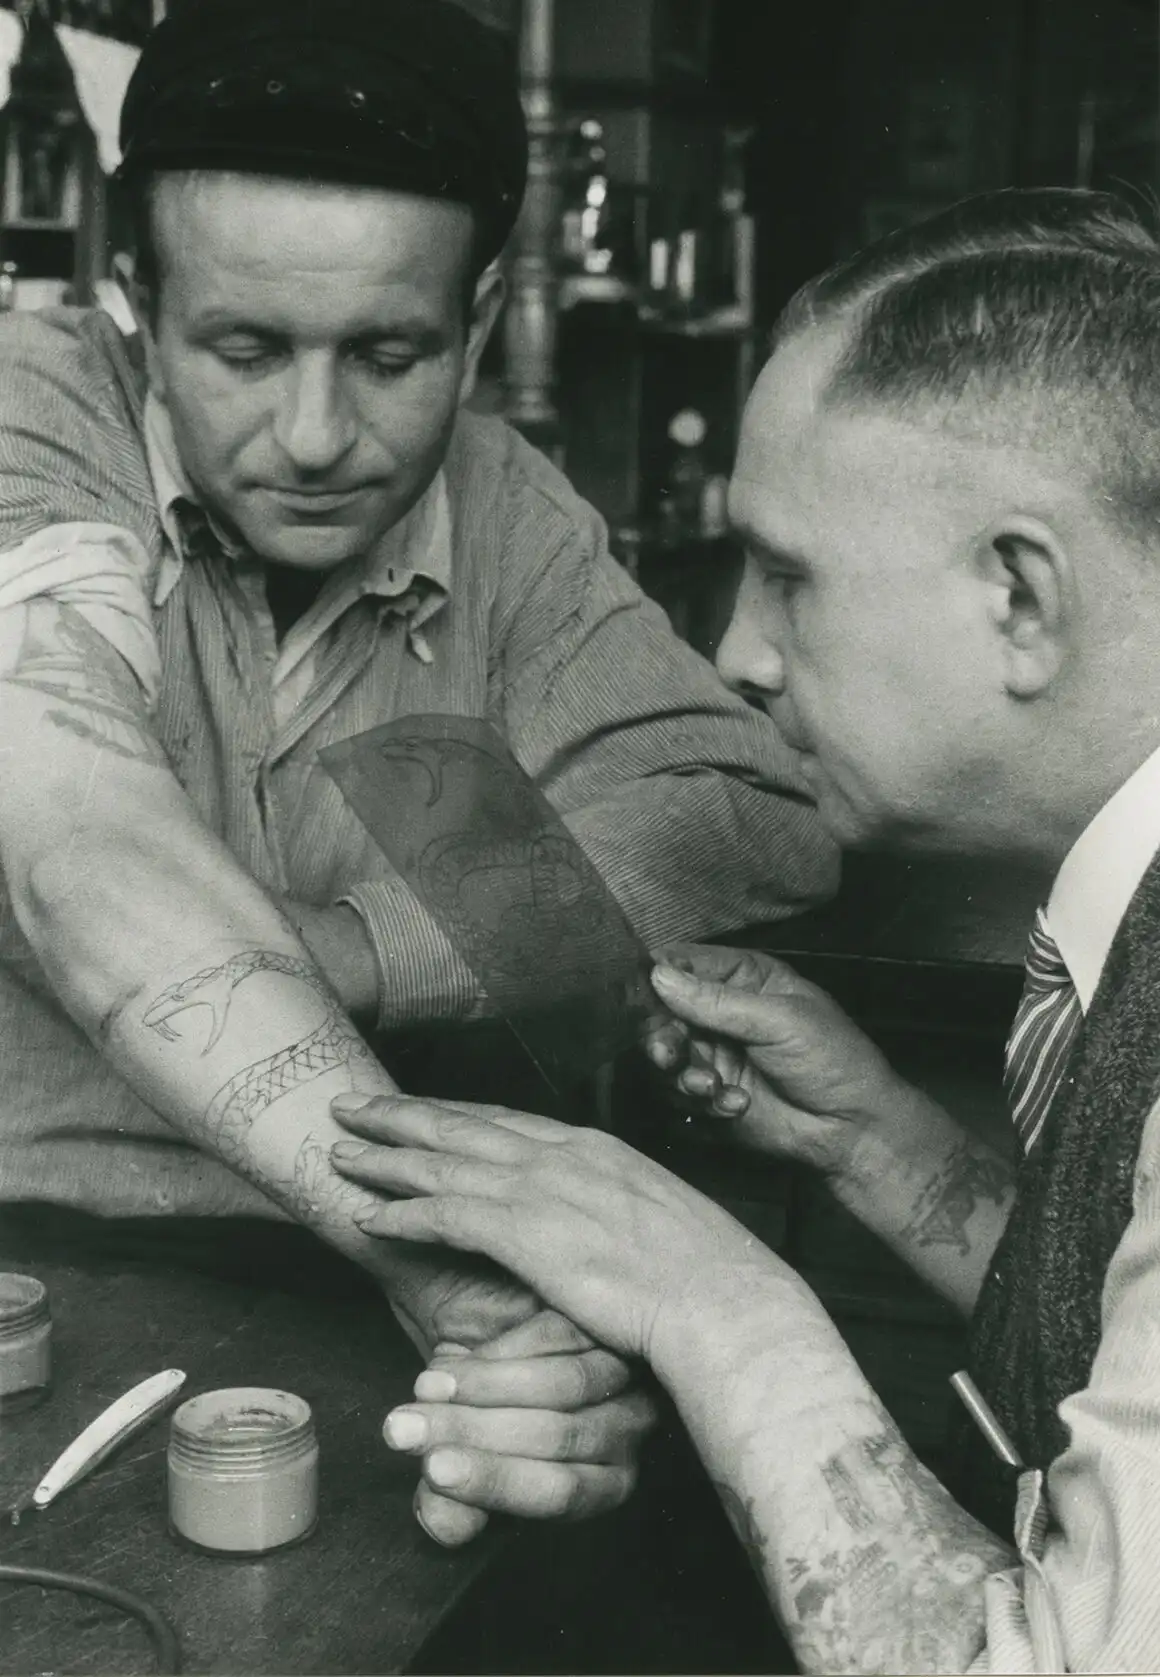 Christian Warlich applying a stencil on a customer, c. 1936